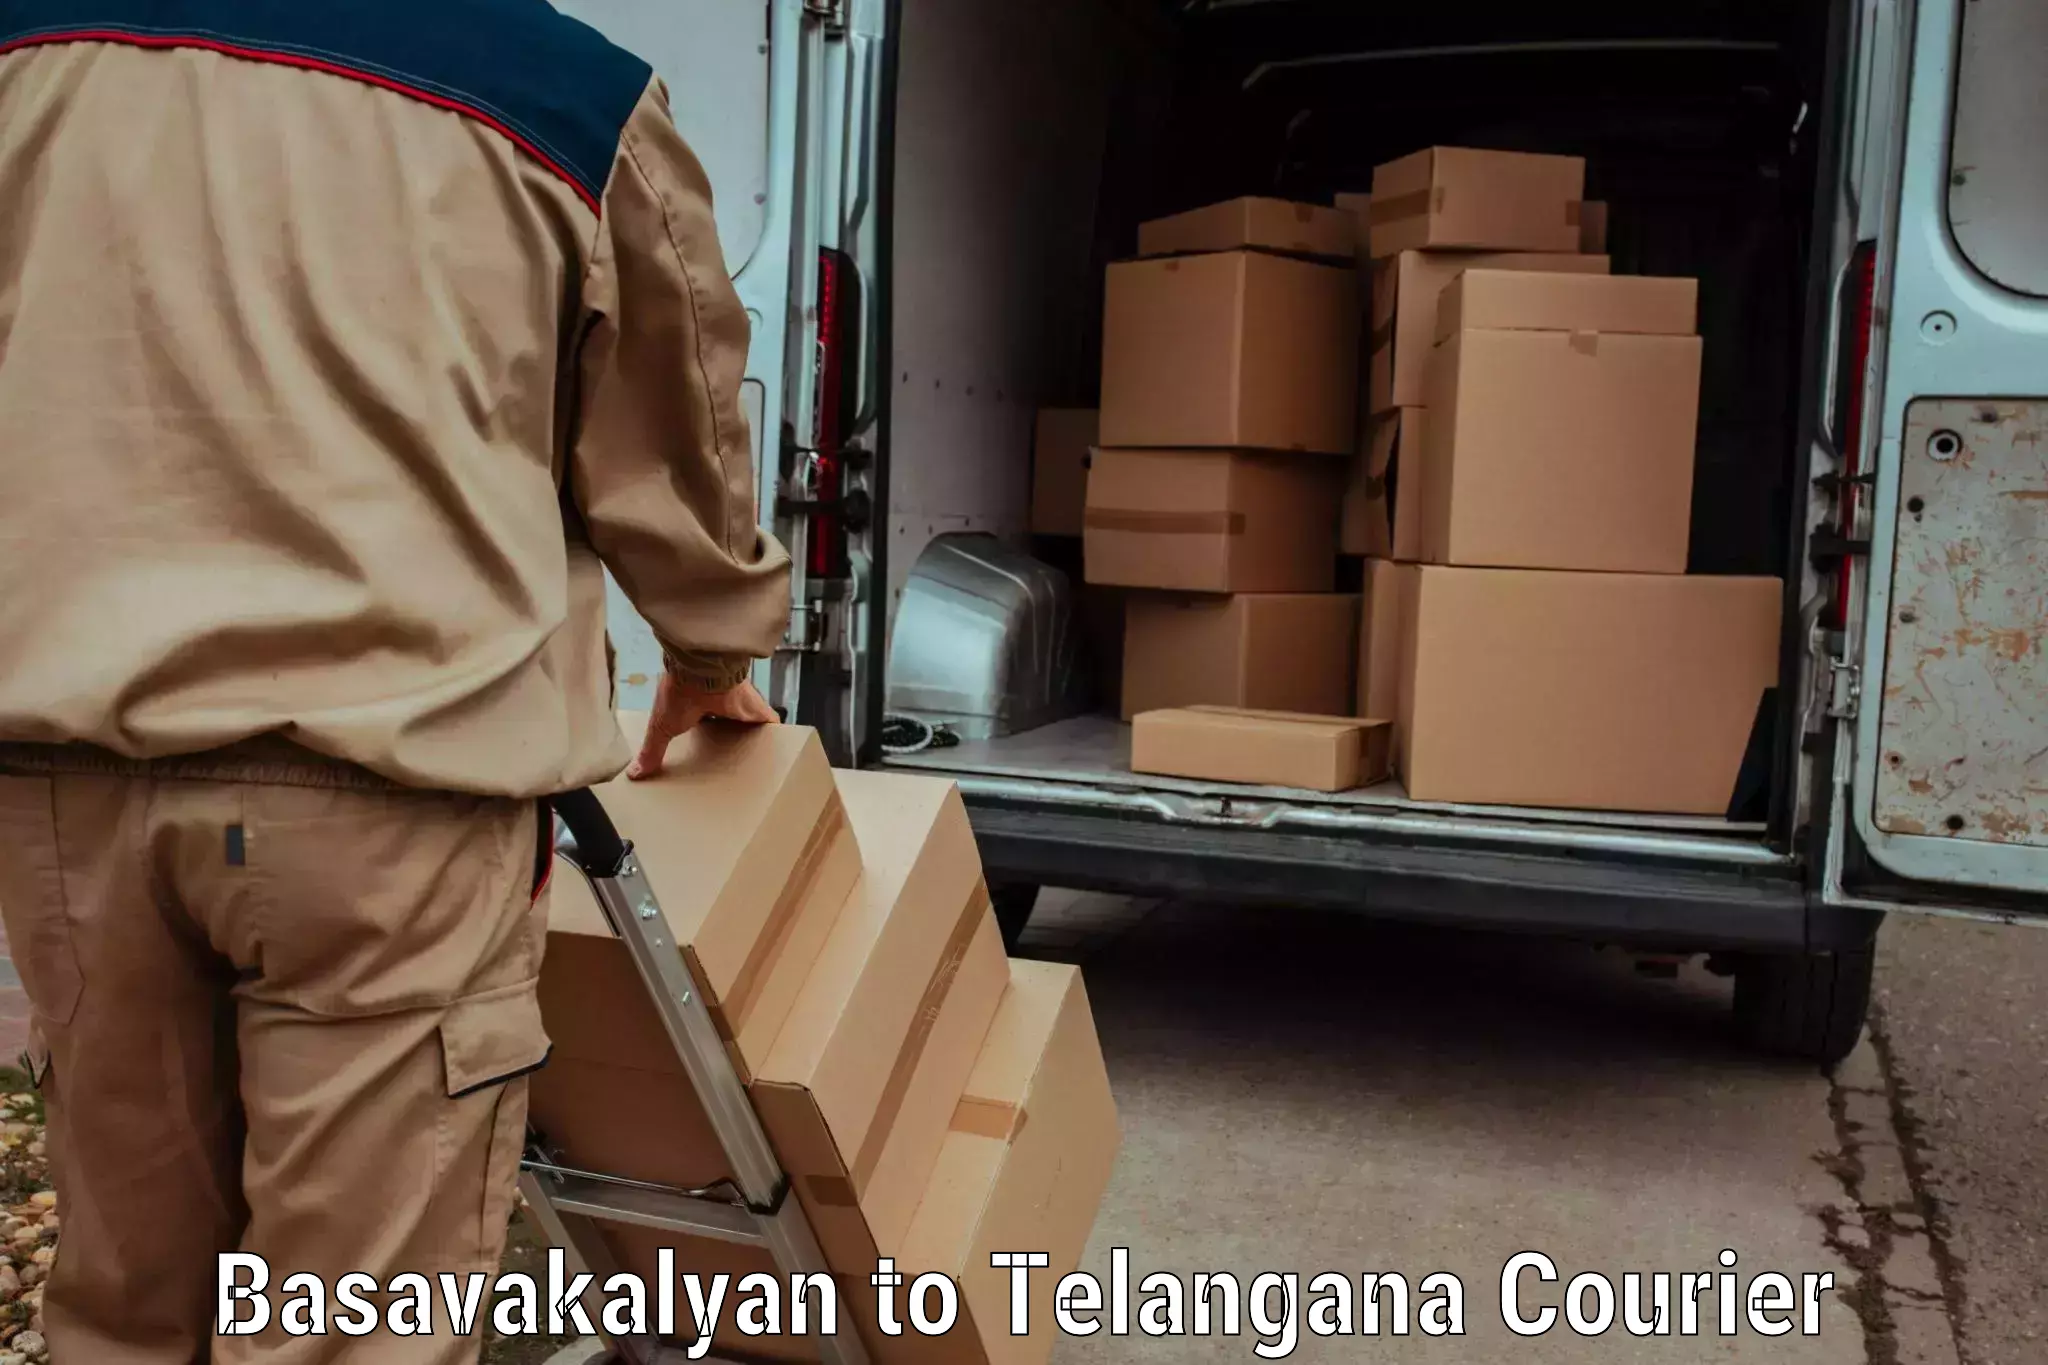 24/7 courier service in Basavakalyan to Peddapalli